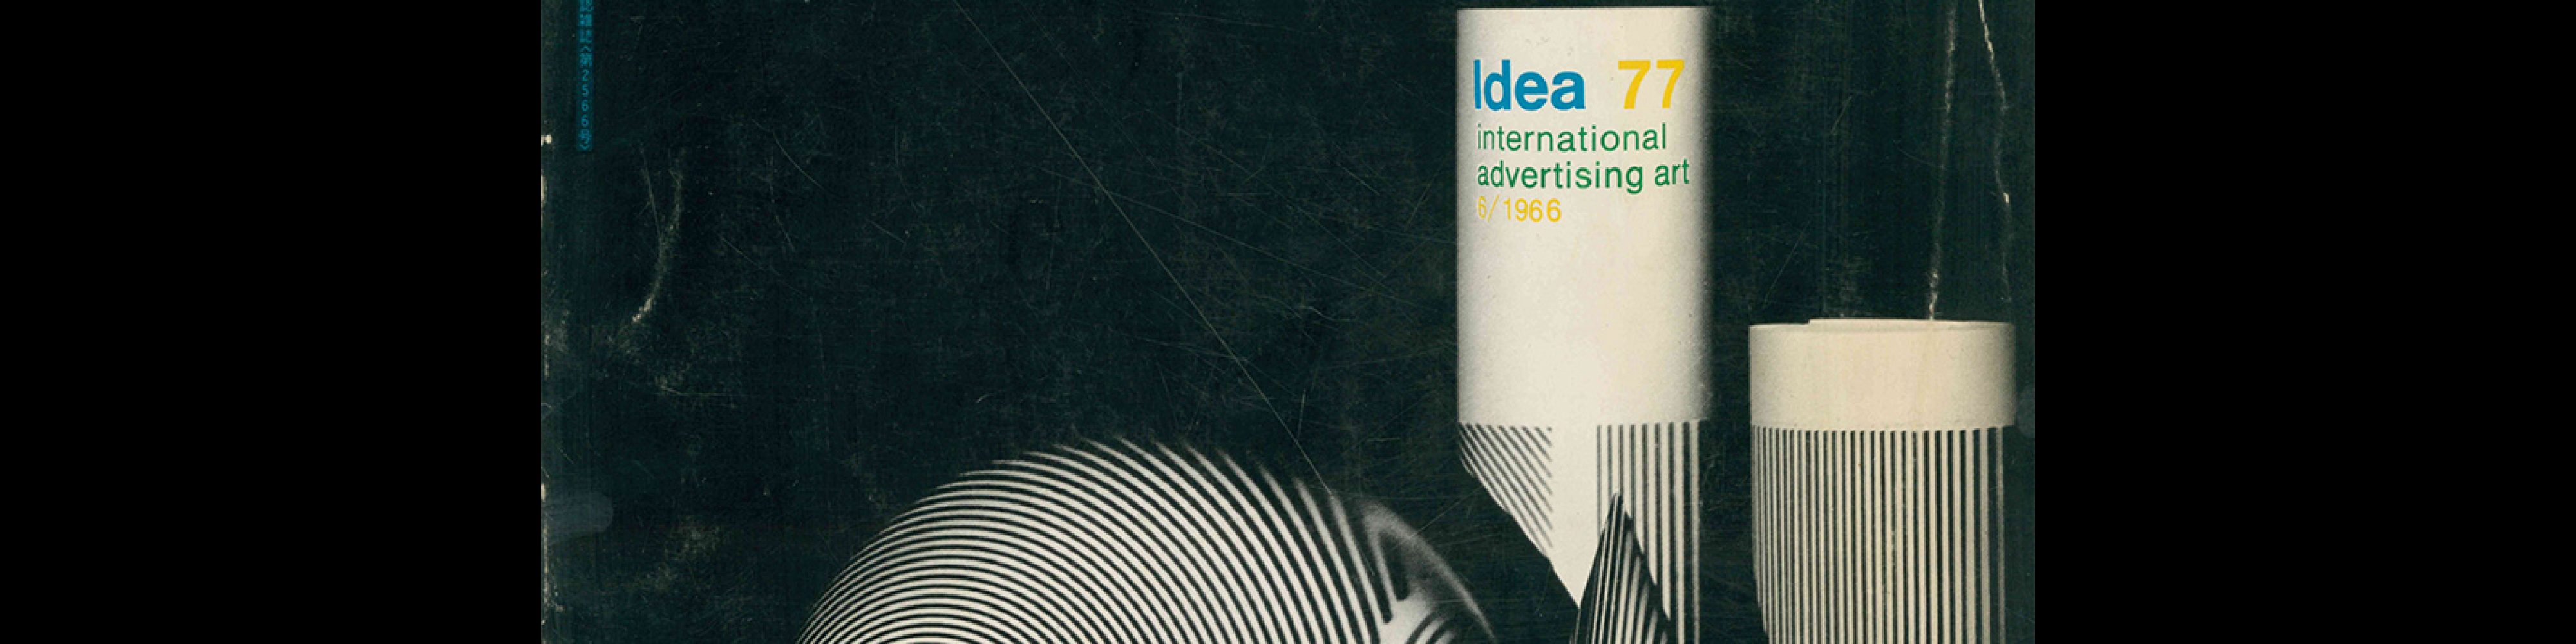 Idea 77, 1966-7. Cover design by Graphicteam.